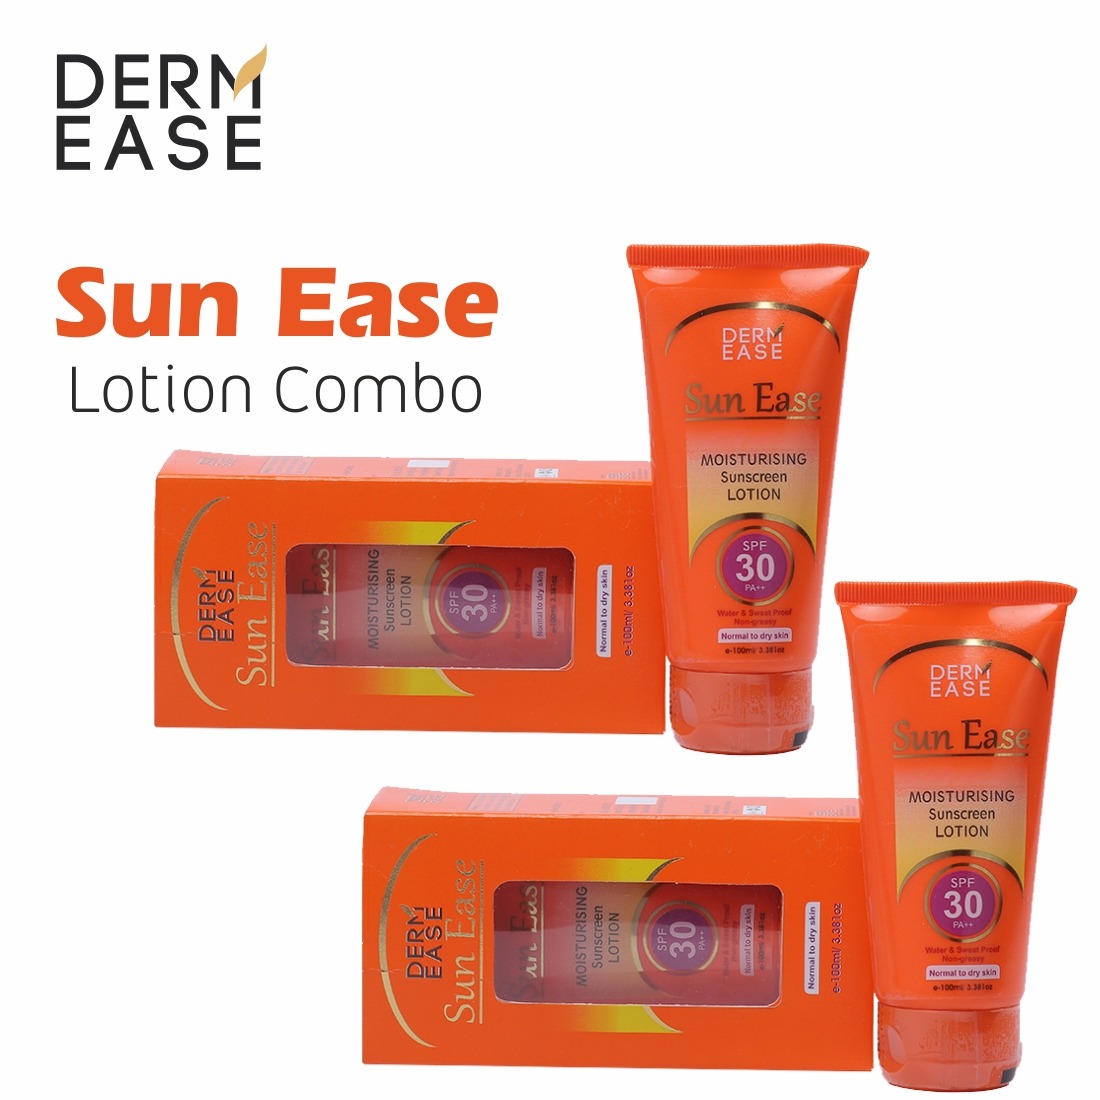 DERM EASE Sun Ease Sunscreen Body Lotion Combo